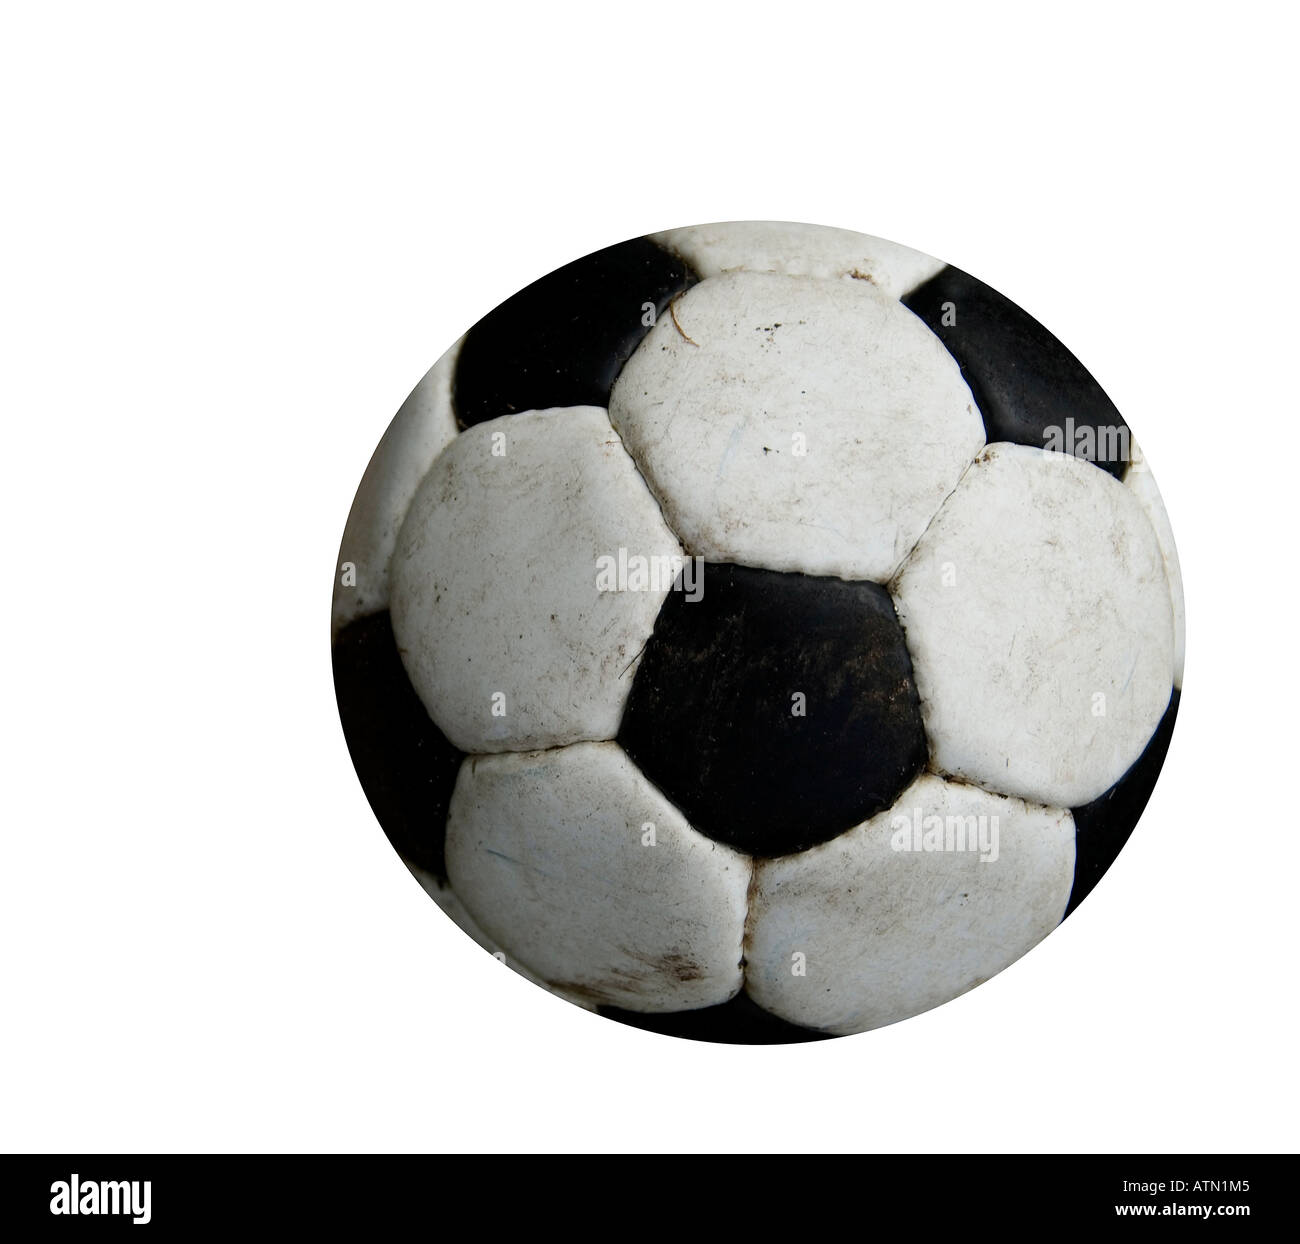 Chaussures de football noir et or avec un ballon de football Photo Stock -  Alamy